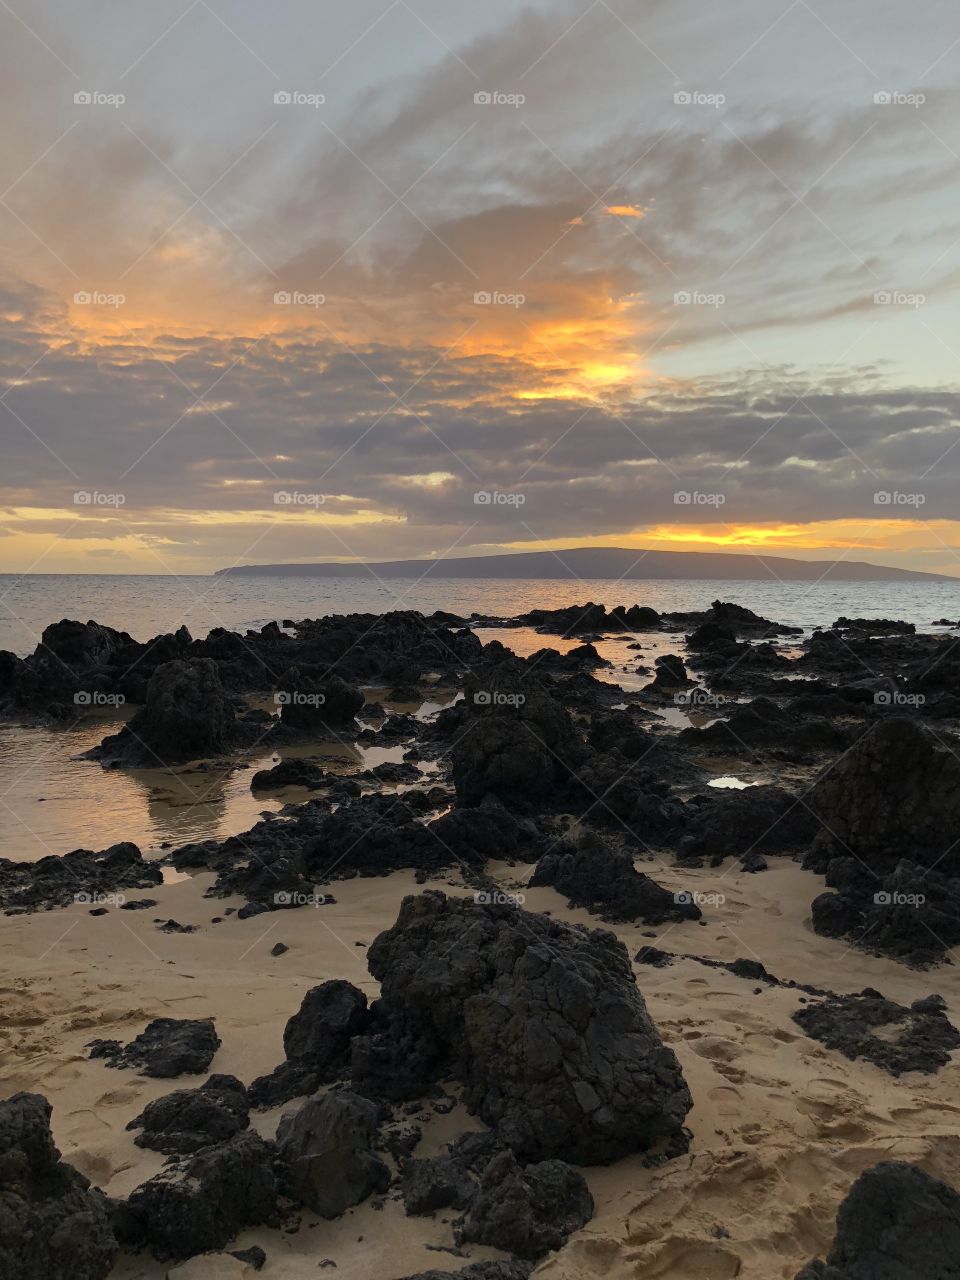 Maui, Hawaii beach sunset